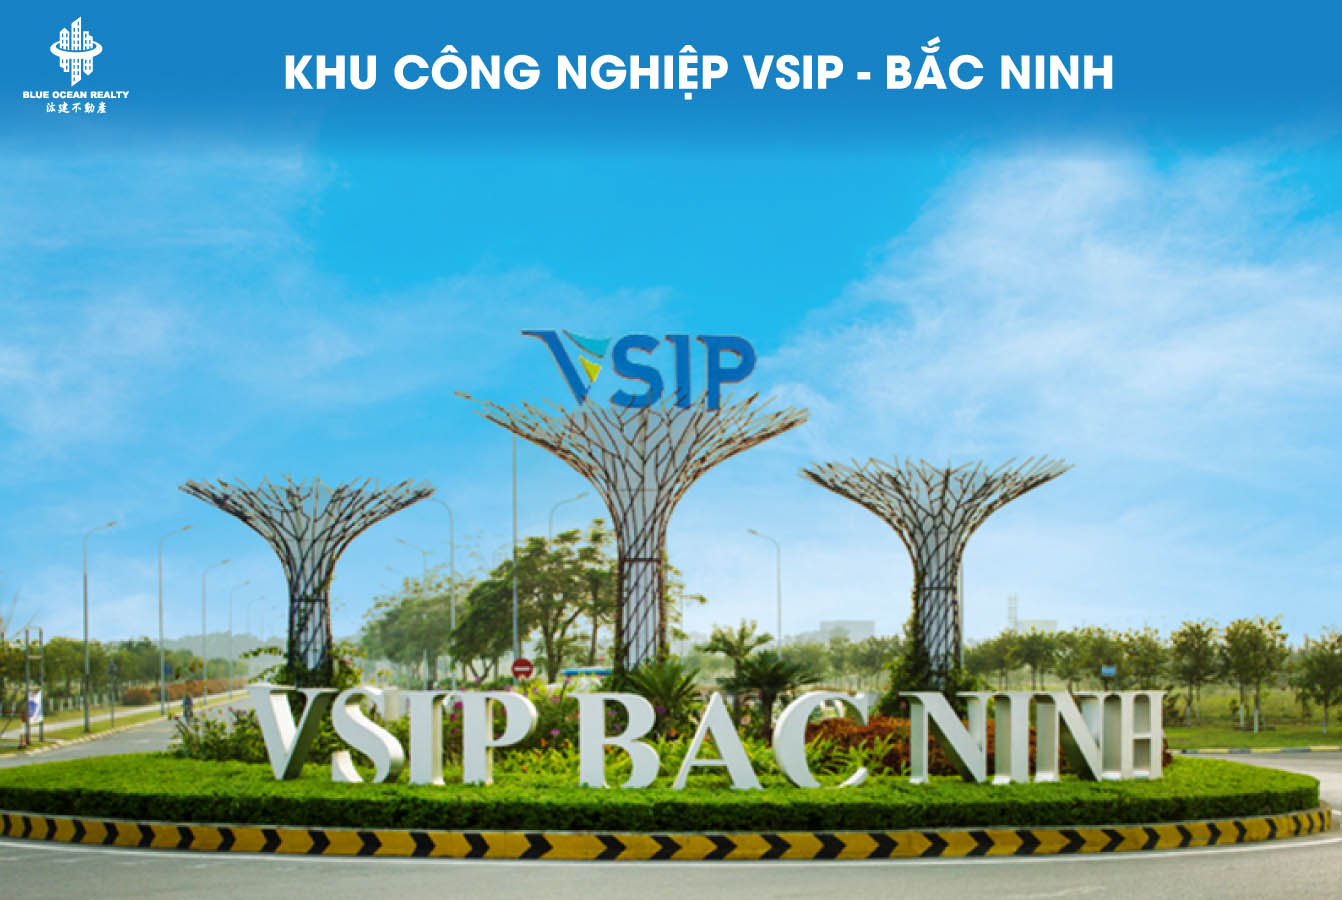 Khu công nghiệp (KCN) VSIP - Bắc Ninh